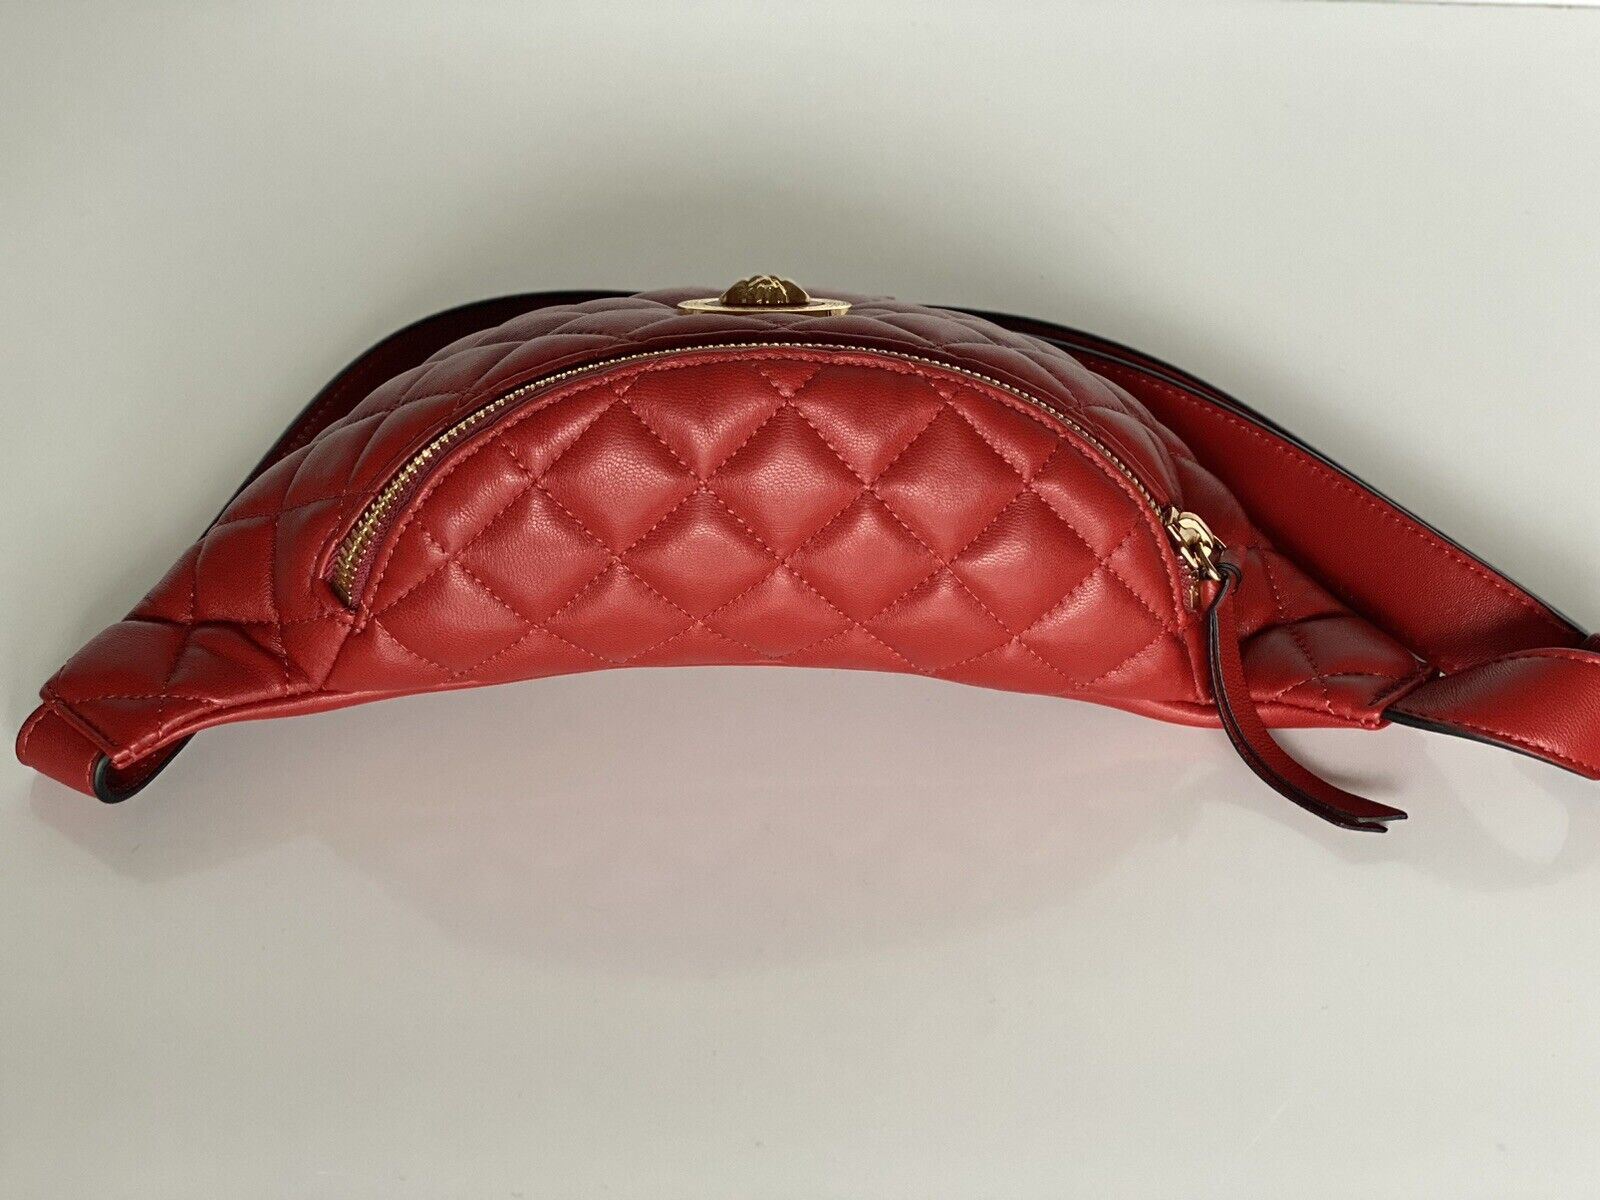 NWT Versace Женская стеганая кожаная сумка ягненка, красная сумка на пояс/пояс/боди 1A02151 Италия 